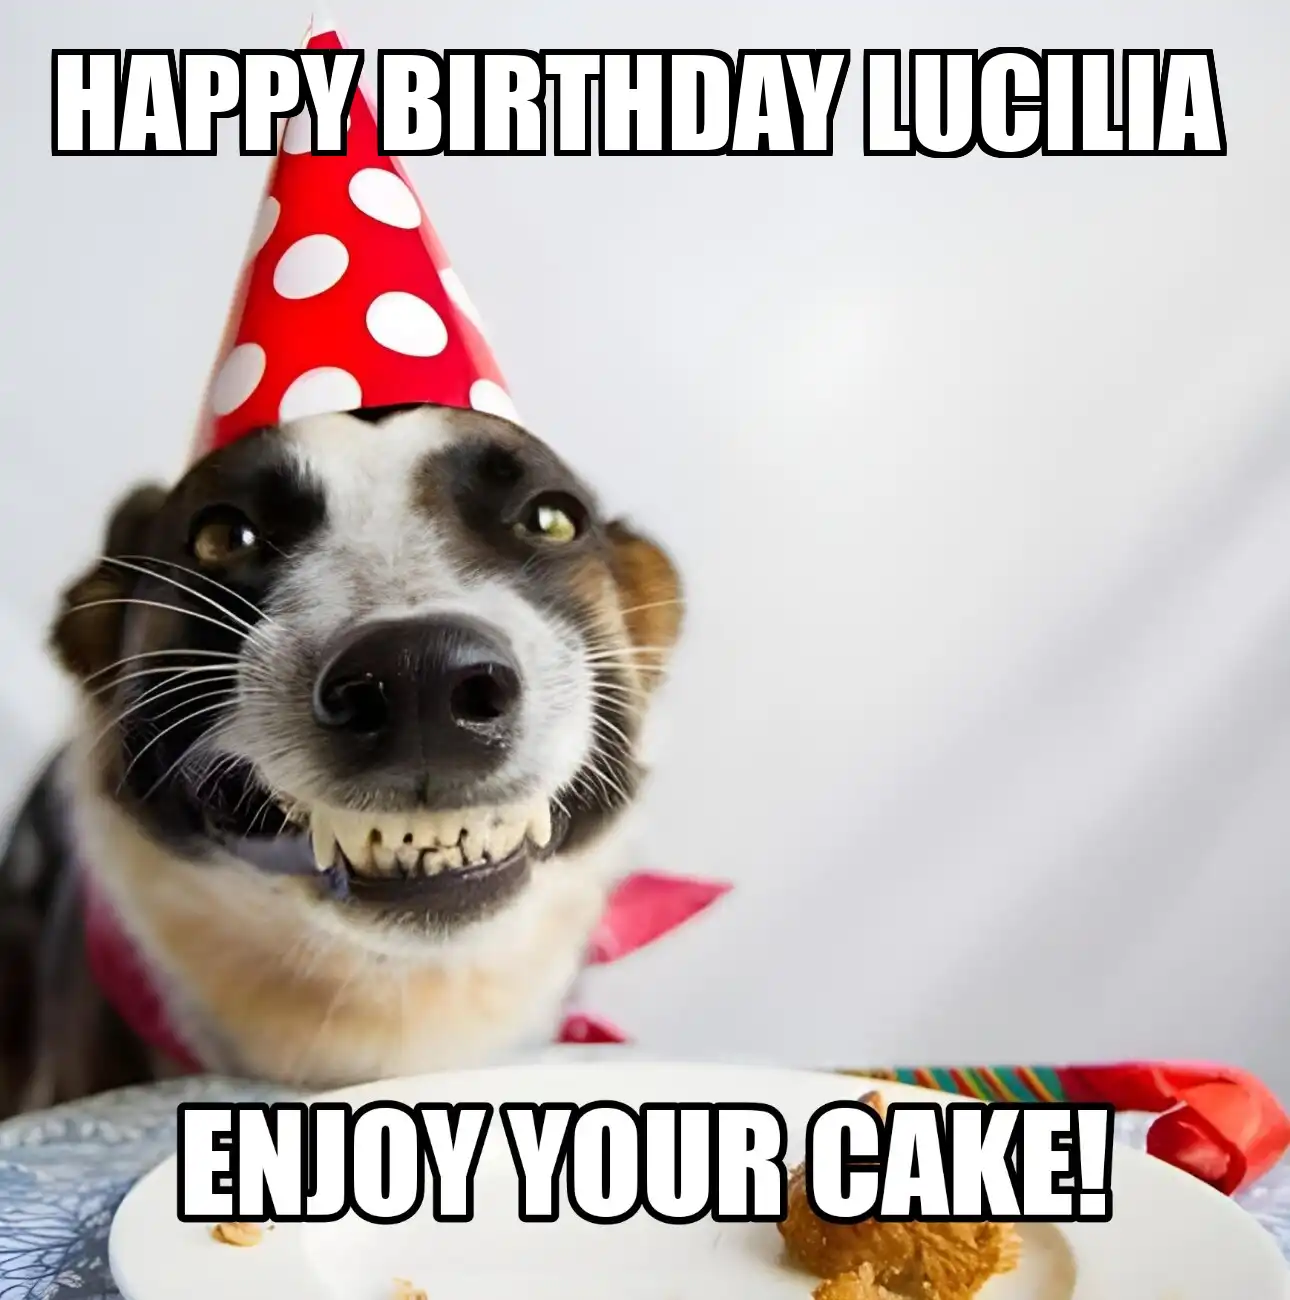 Happy Birthday Lucilia Enjoy Your Cake Dog Meme